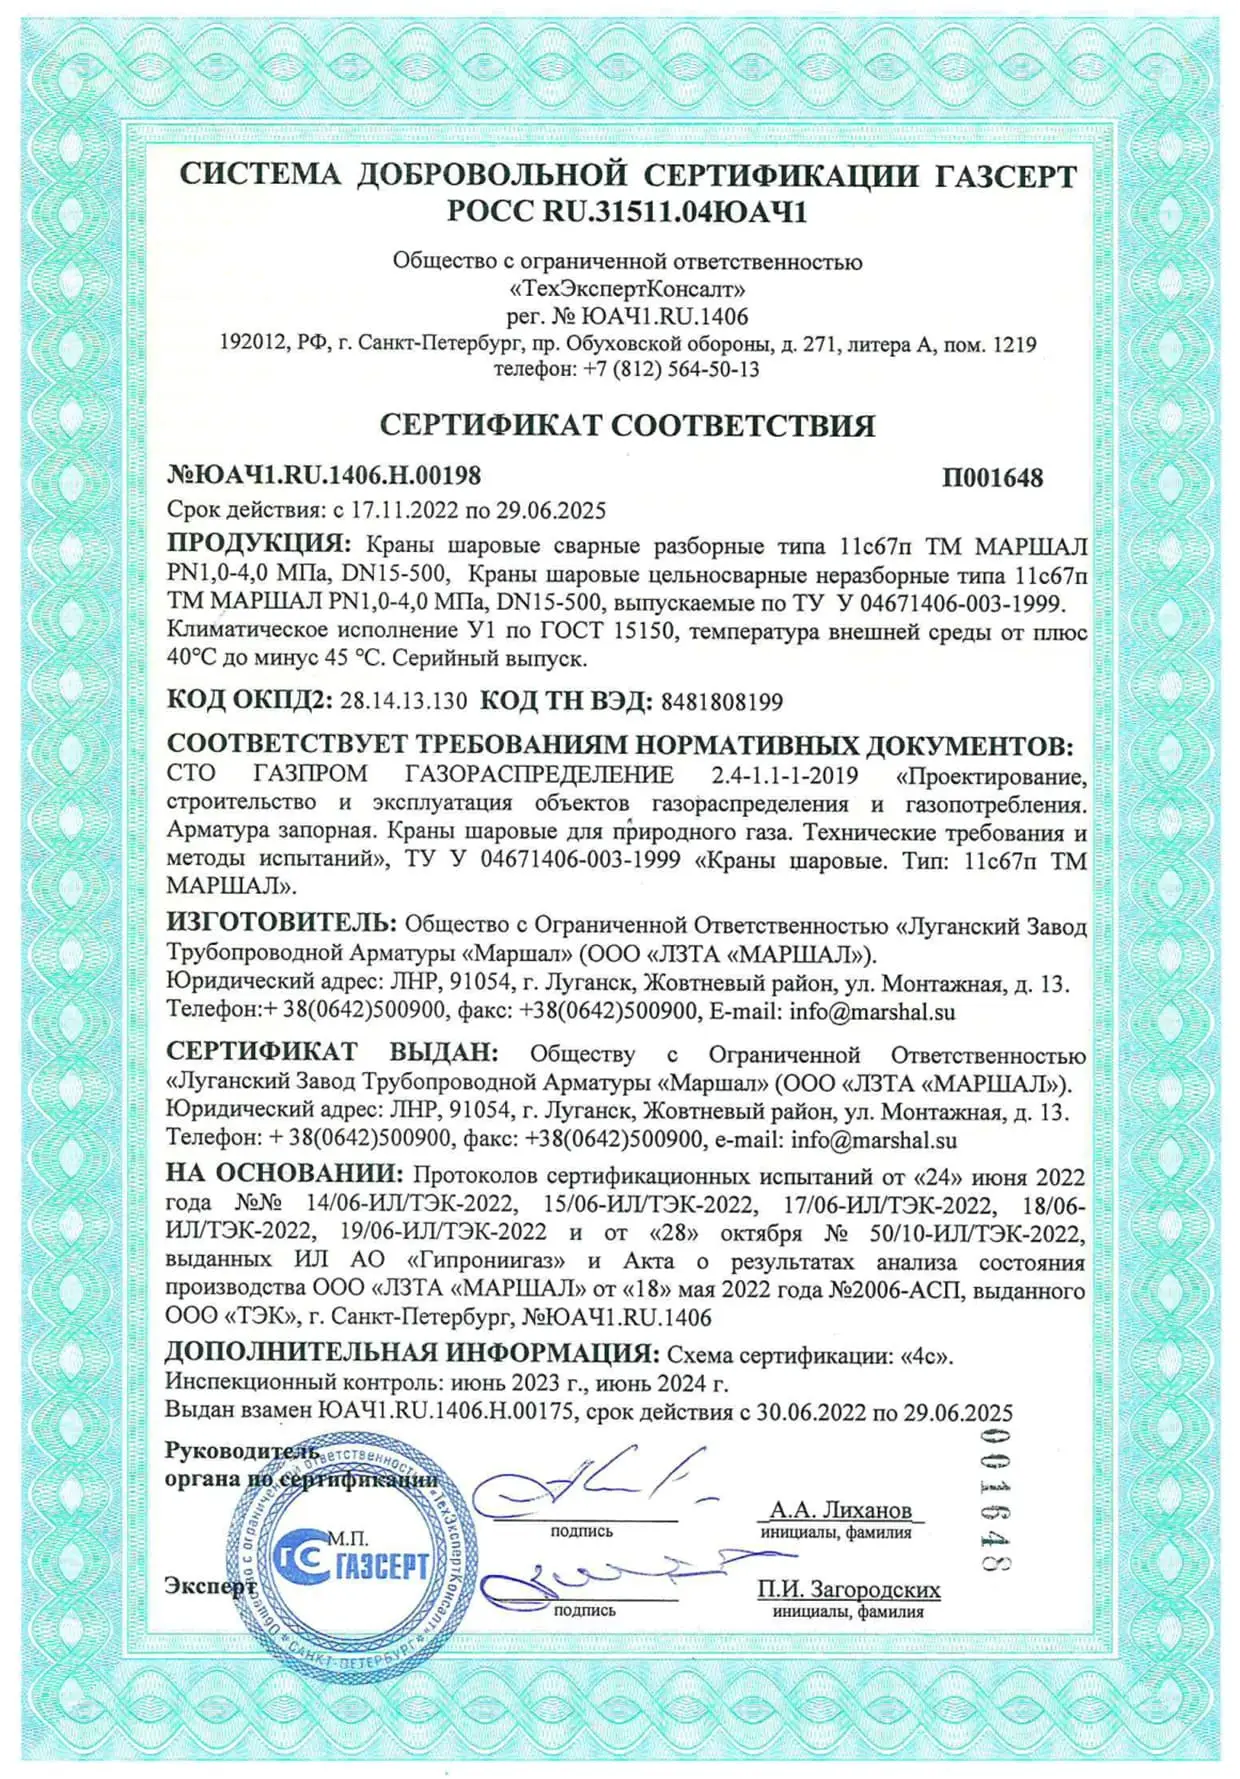 Сертификат соответствия СДС ГАЗСЕРТ с 17.11.2022 по 29.06.2025